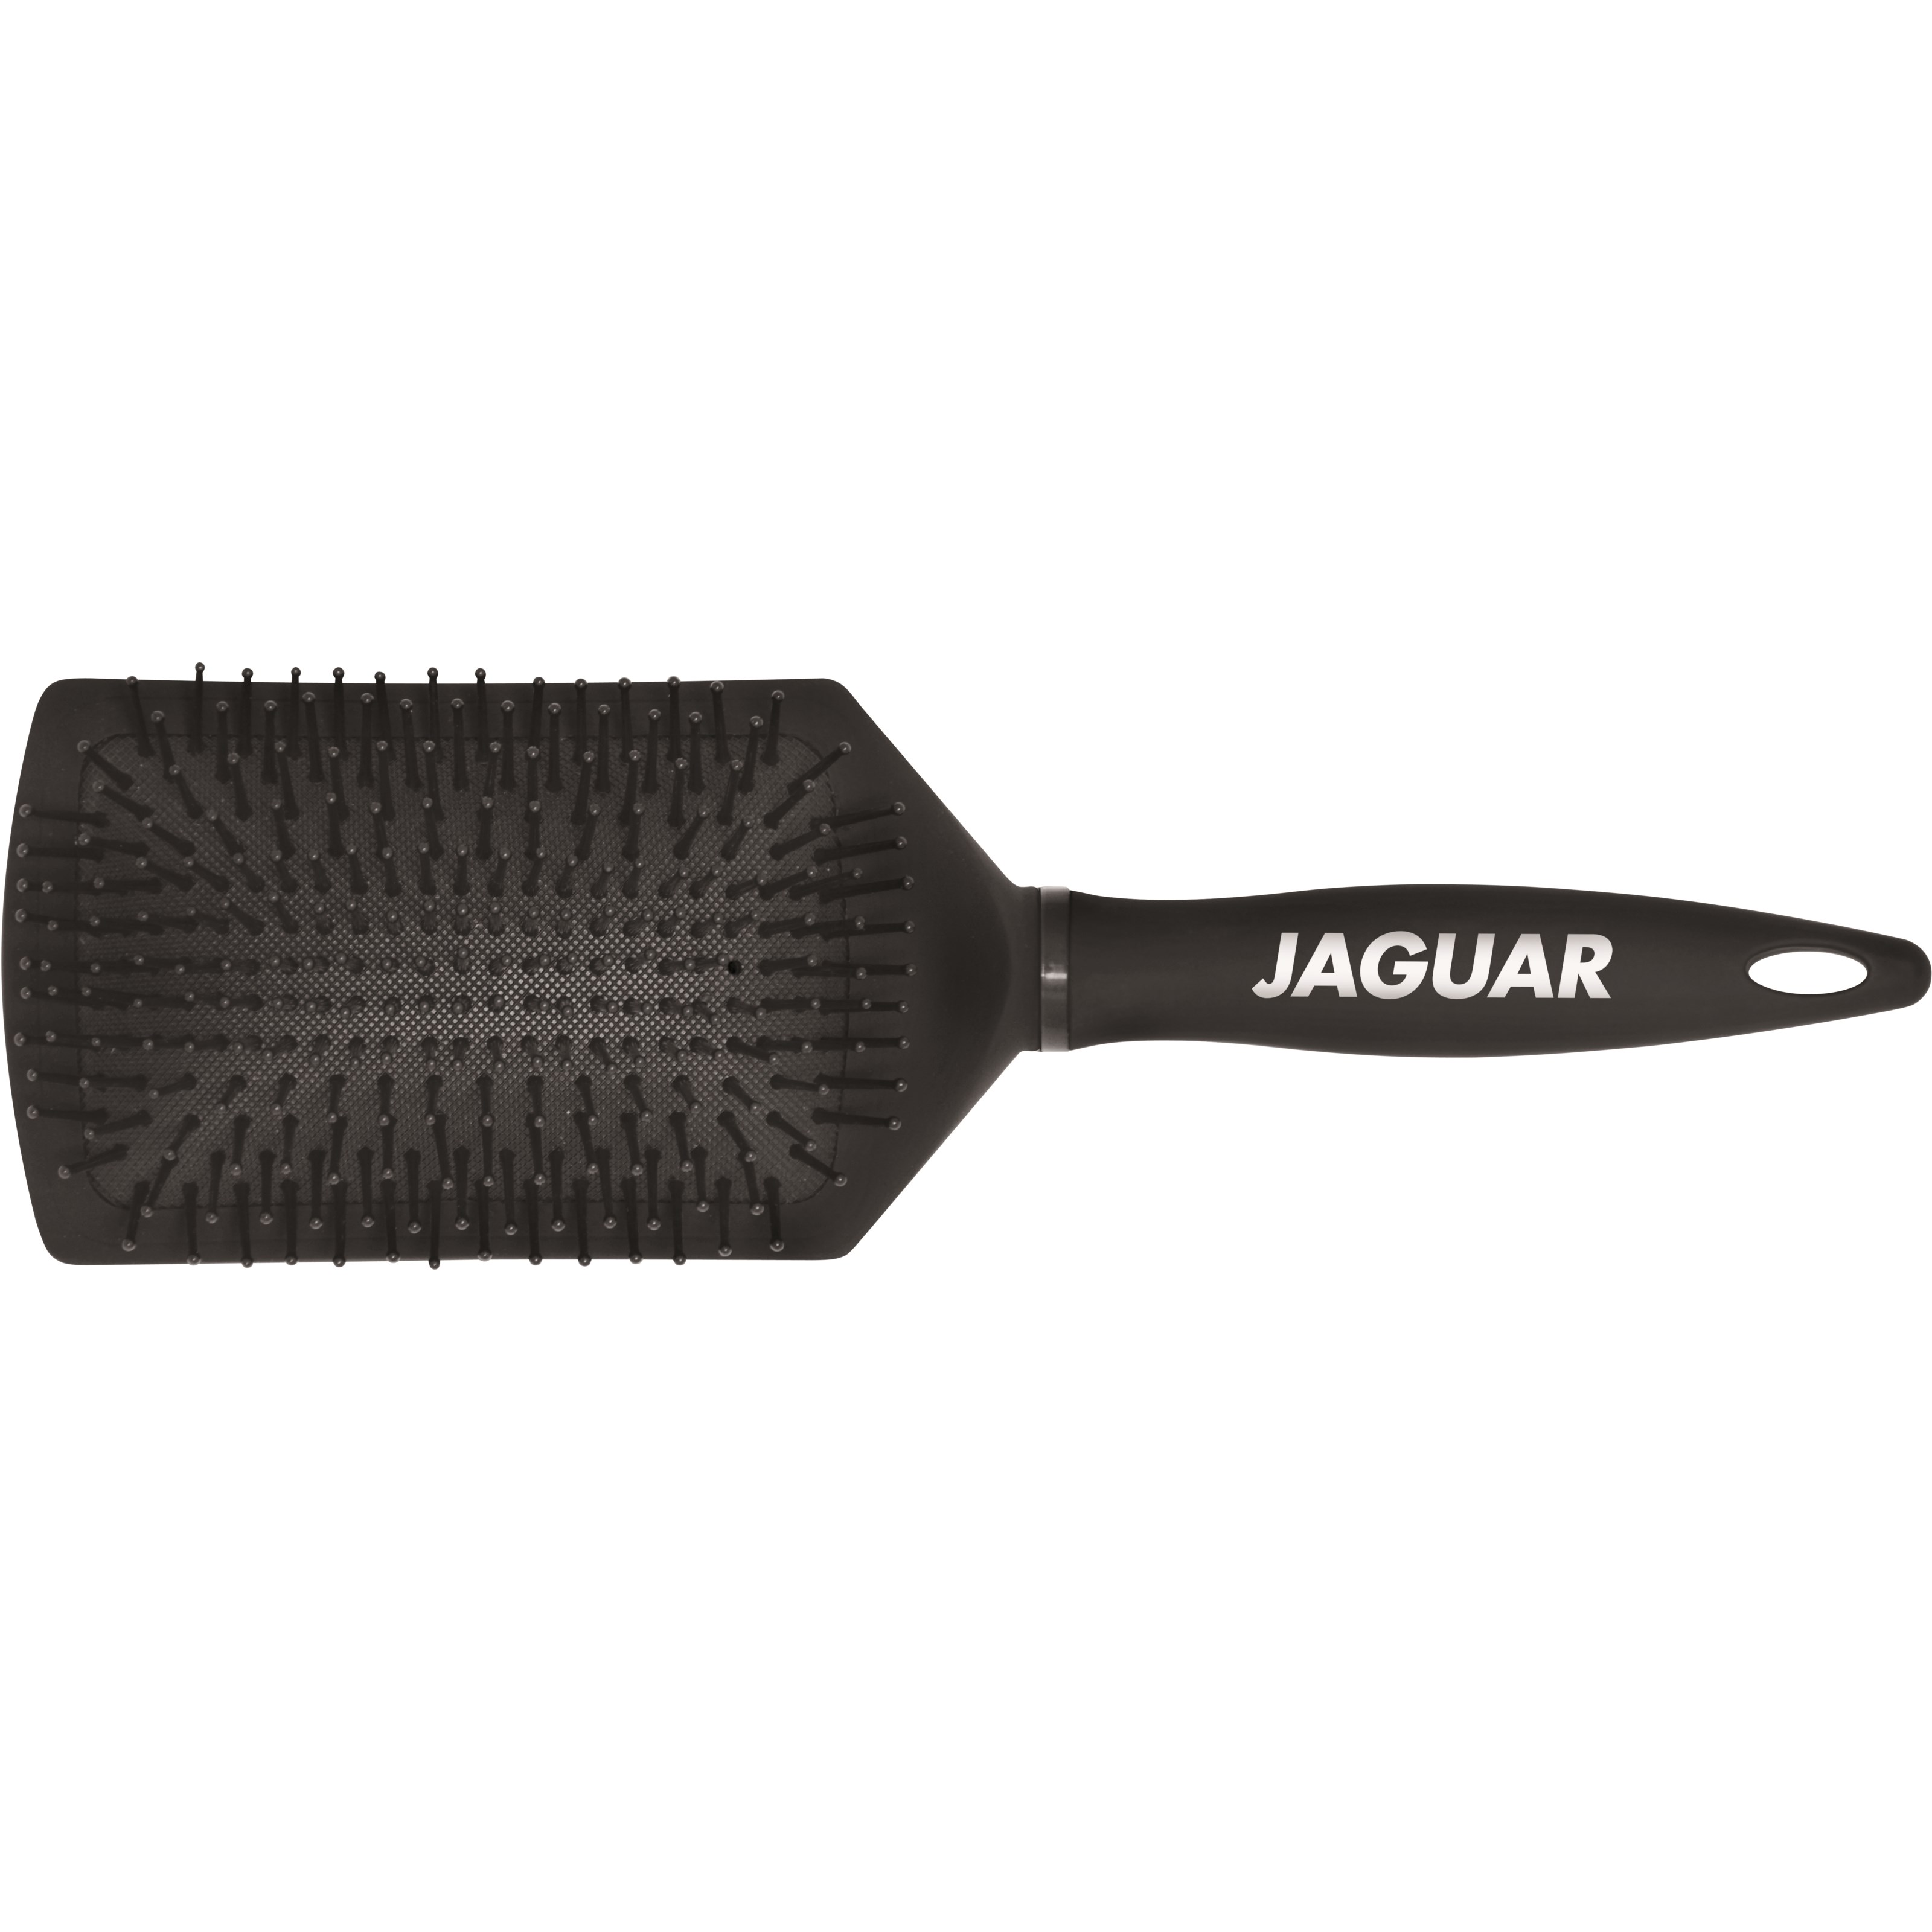 Zdjęcia - Szczotka do włosów Jaguar S 5 